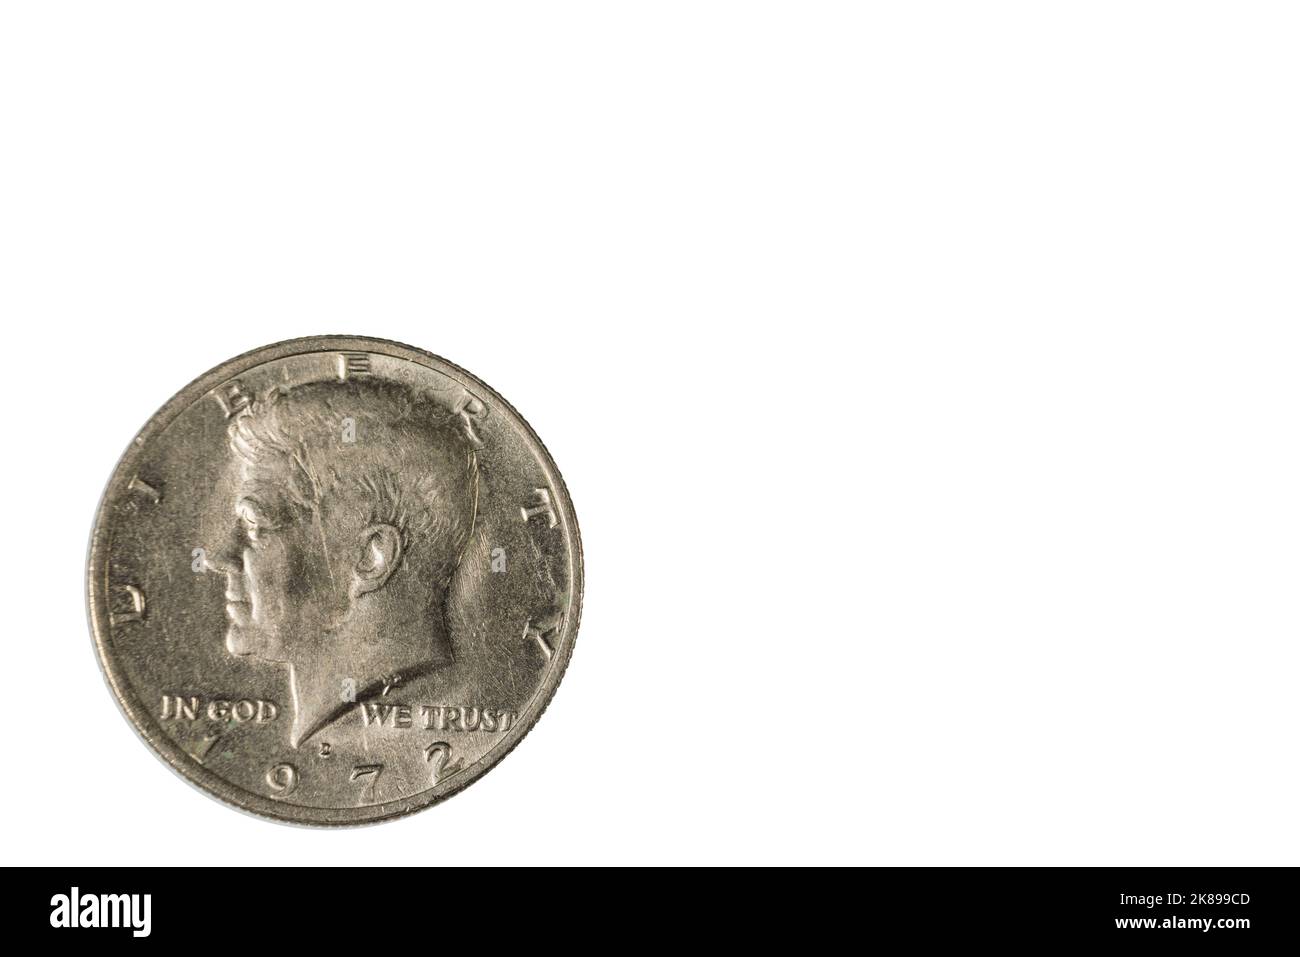 Vue rapprochée de l'avant de la pièce de monnaie d'un demi-dollar américain datée de 1972. Concept numismatique. Banque D'Images